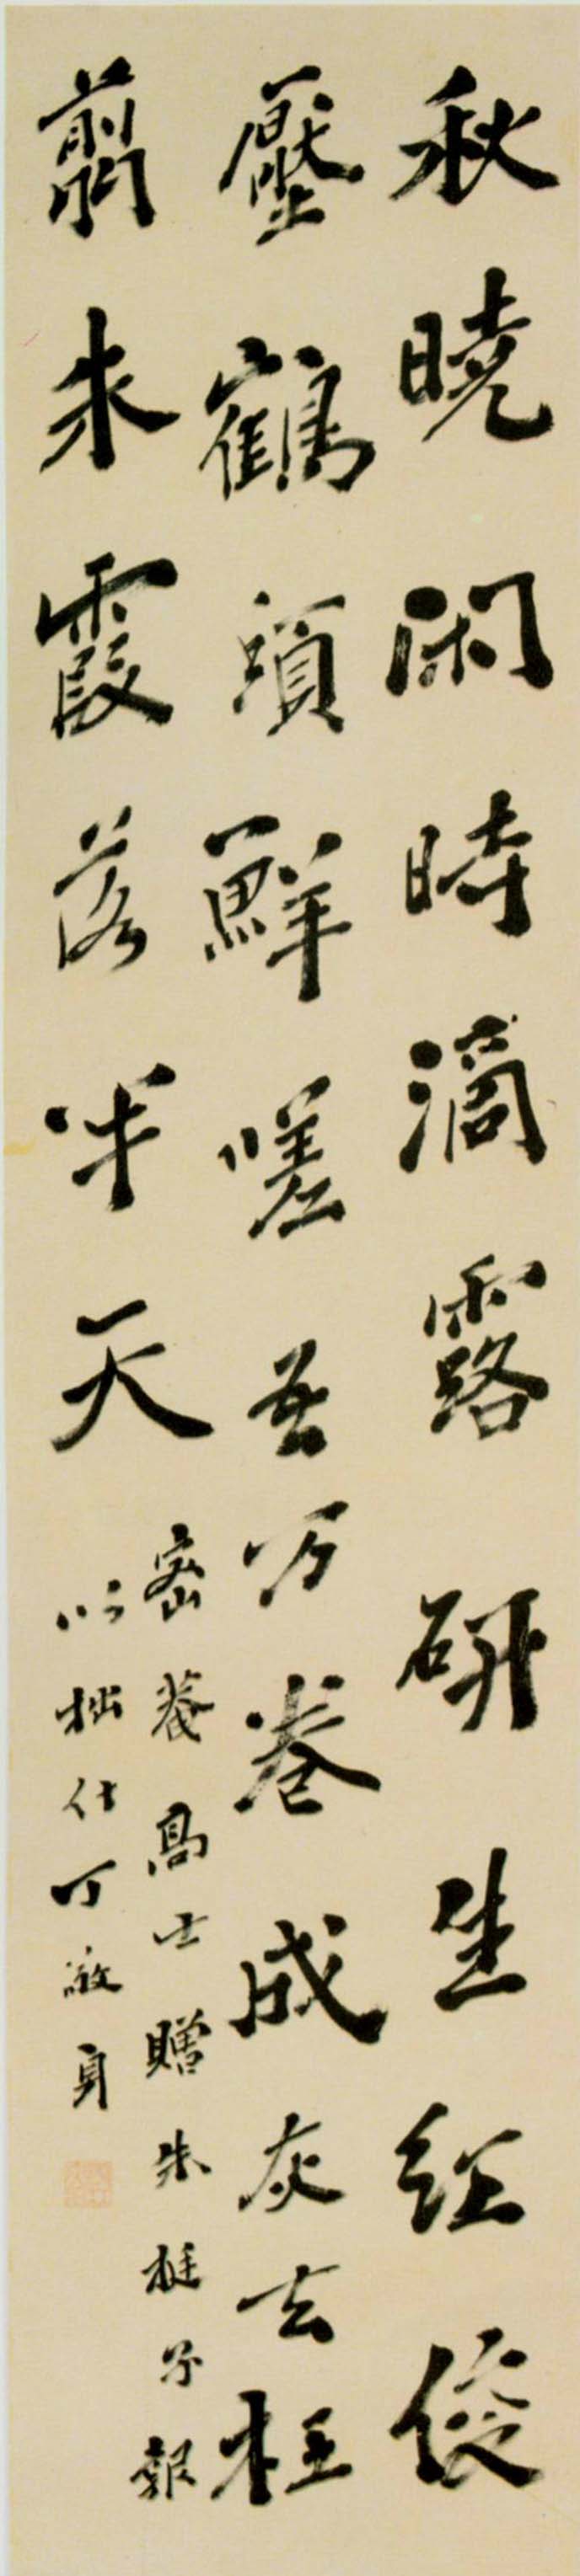 丁敬《行书七绝立轴》-北京故宫博物院藏(图1)